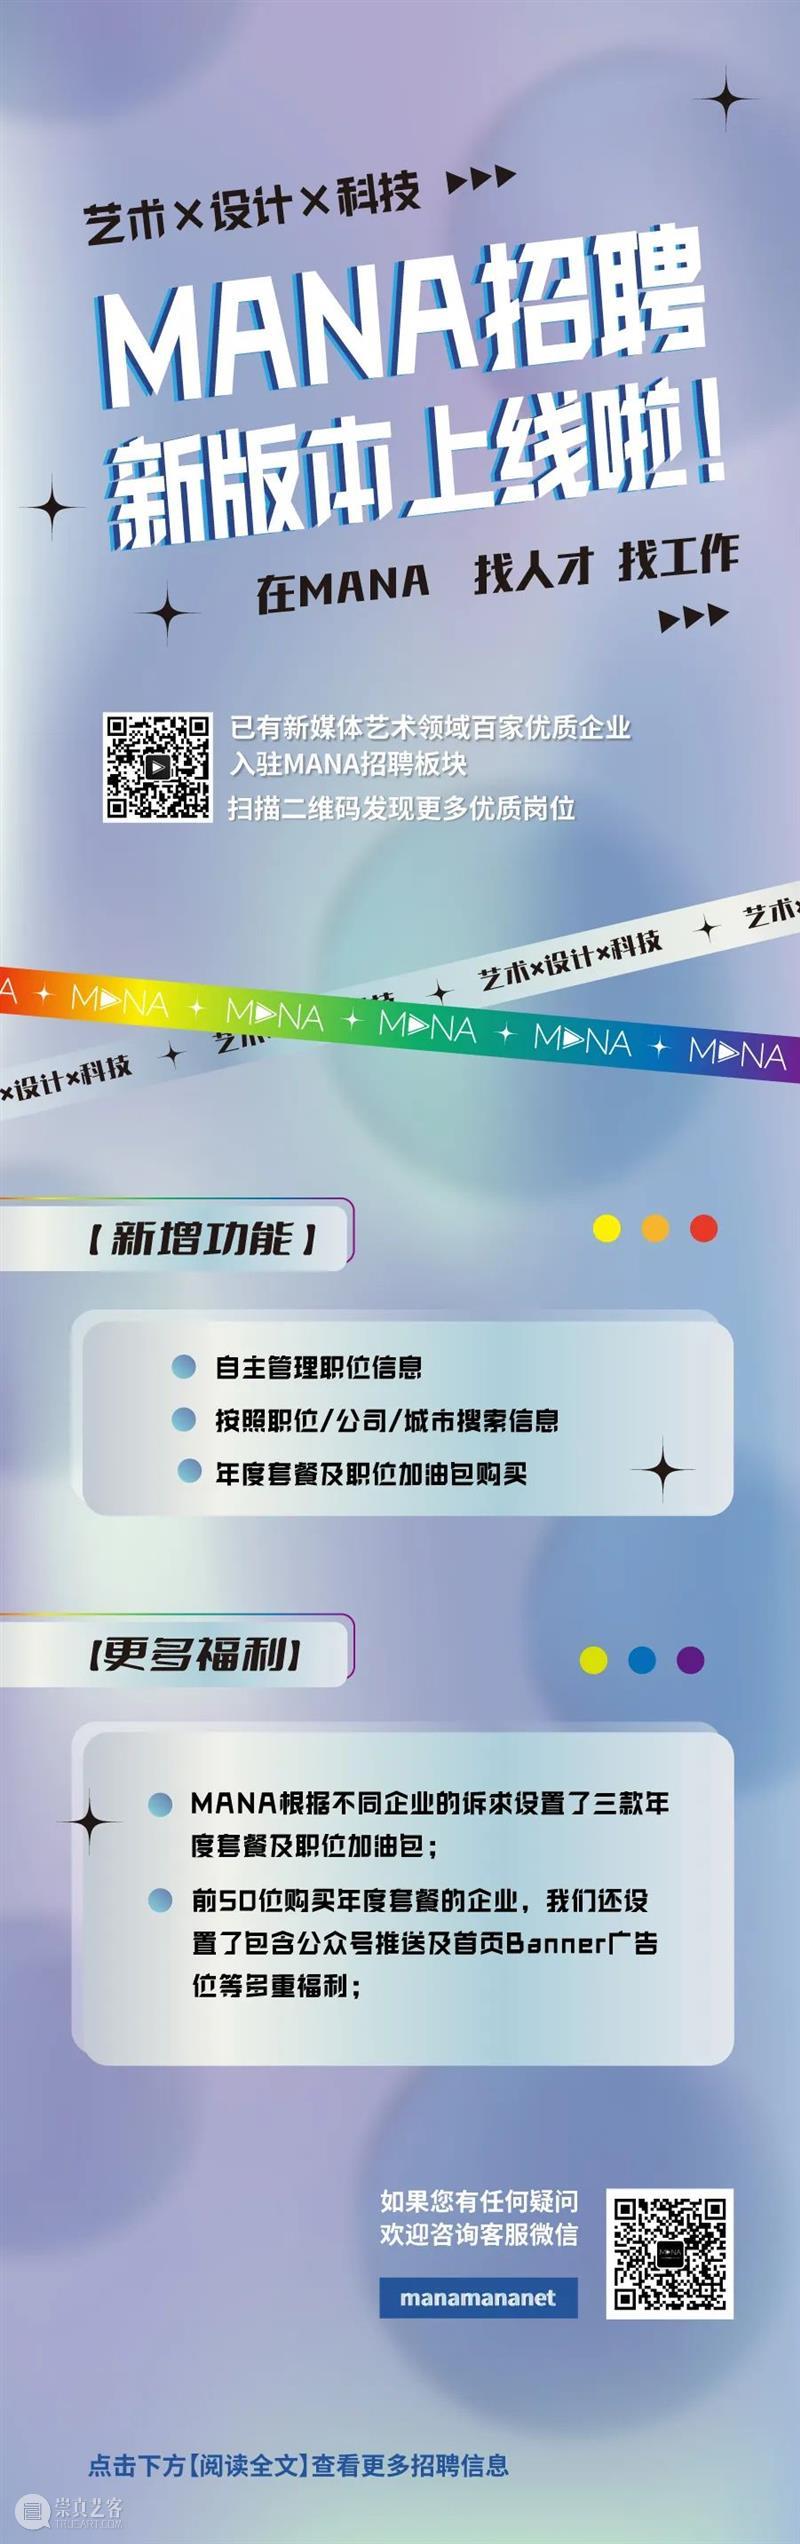 招聘 | 上海 | SUNRAY- 商务拓展/资深三维动画设计师/互动视觉设计师（技术美术）/新媒体运营设计师 崇真艺客